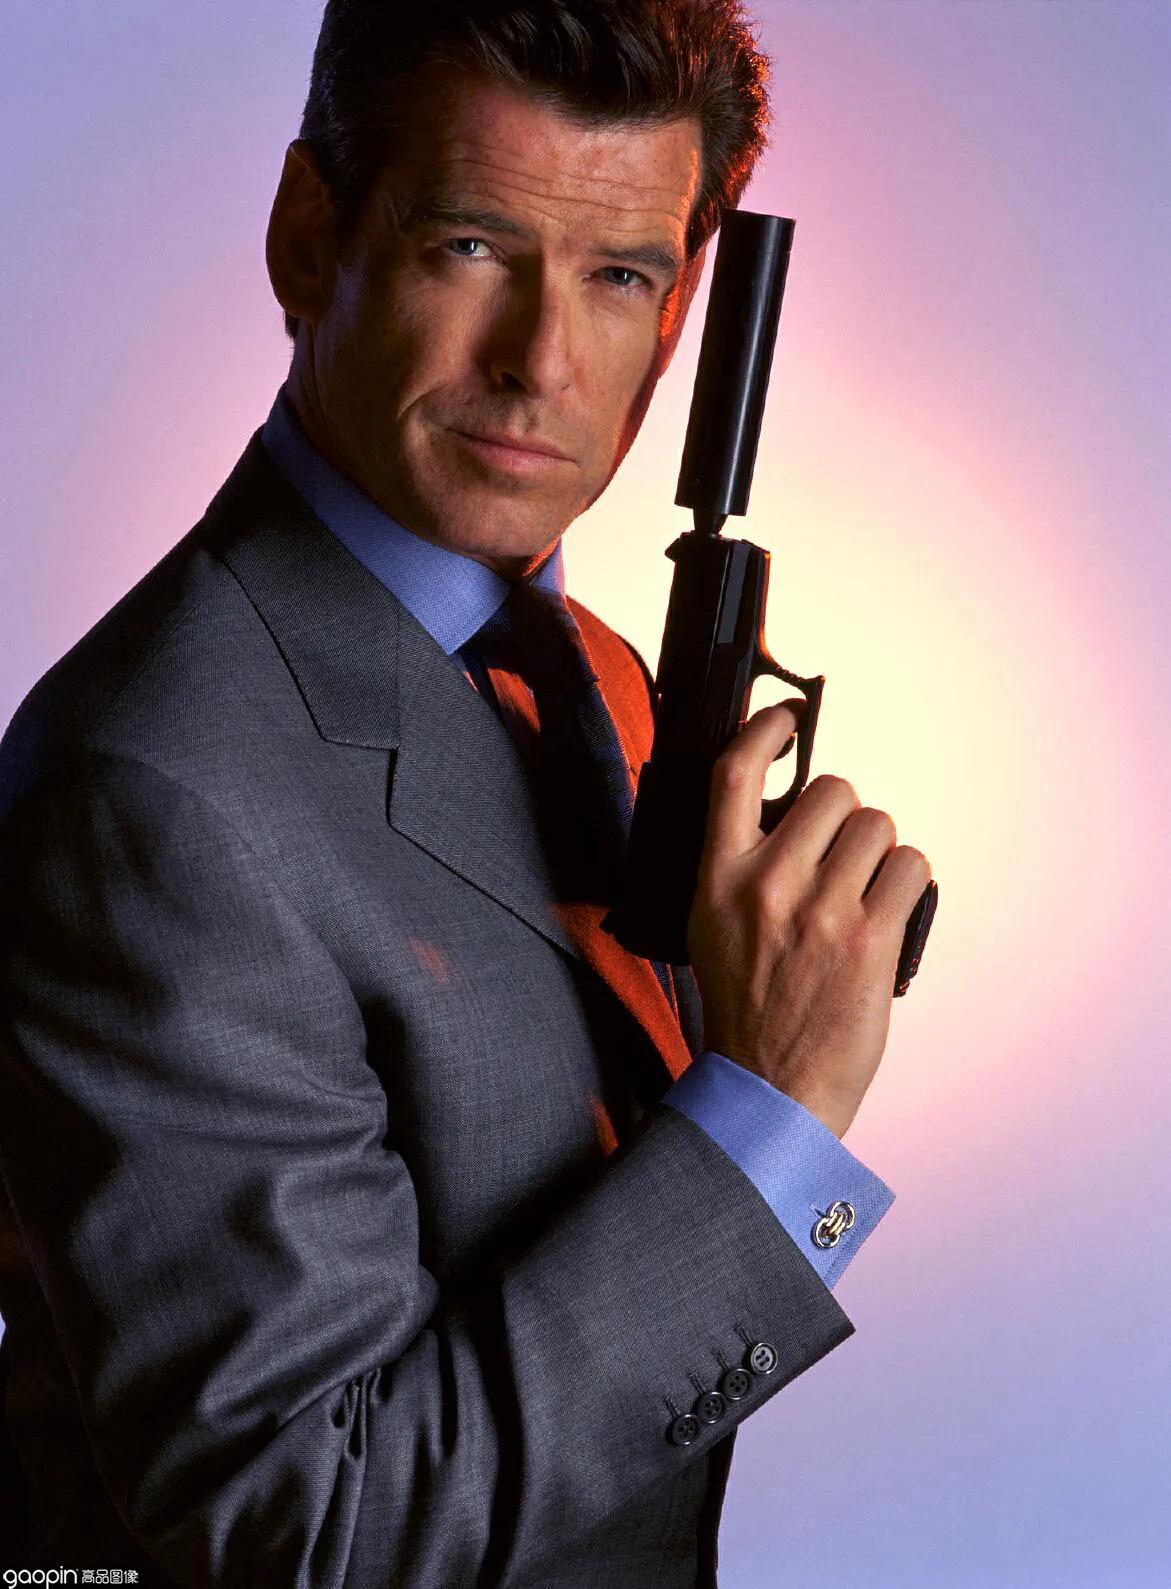 布鲁斯南钦点霍普金斯出演007 网友表示:下一任007定了?